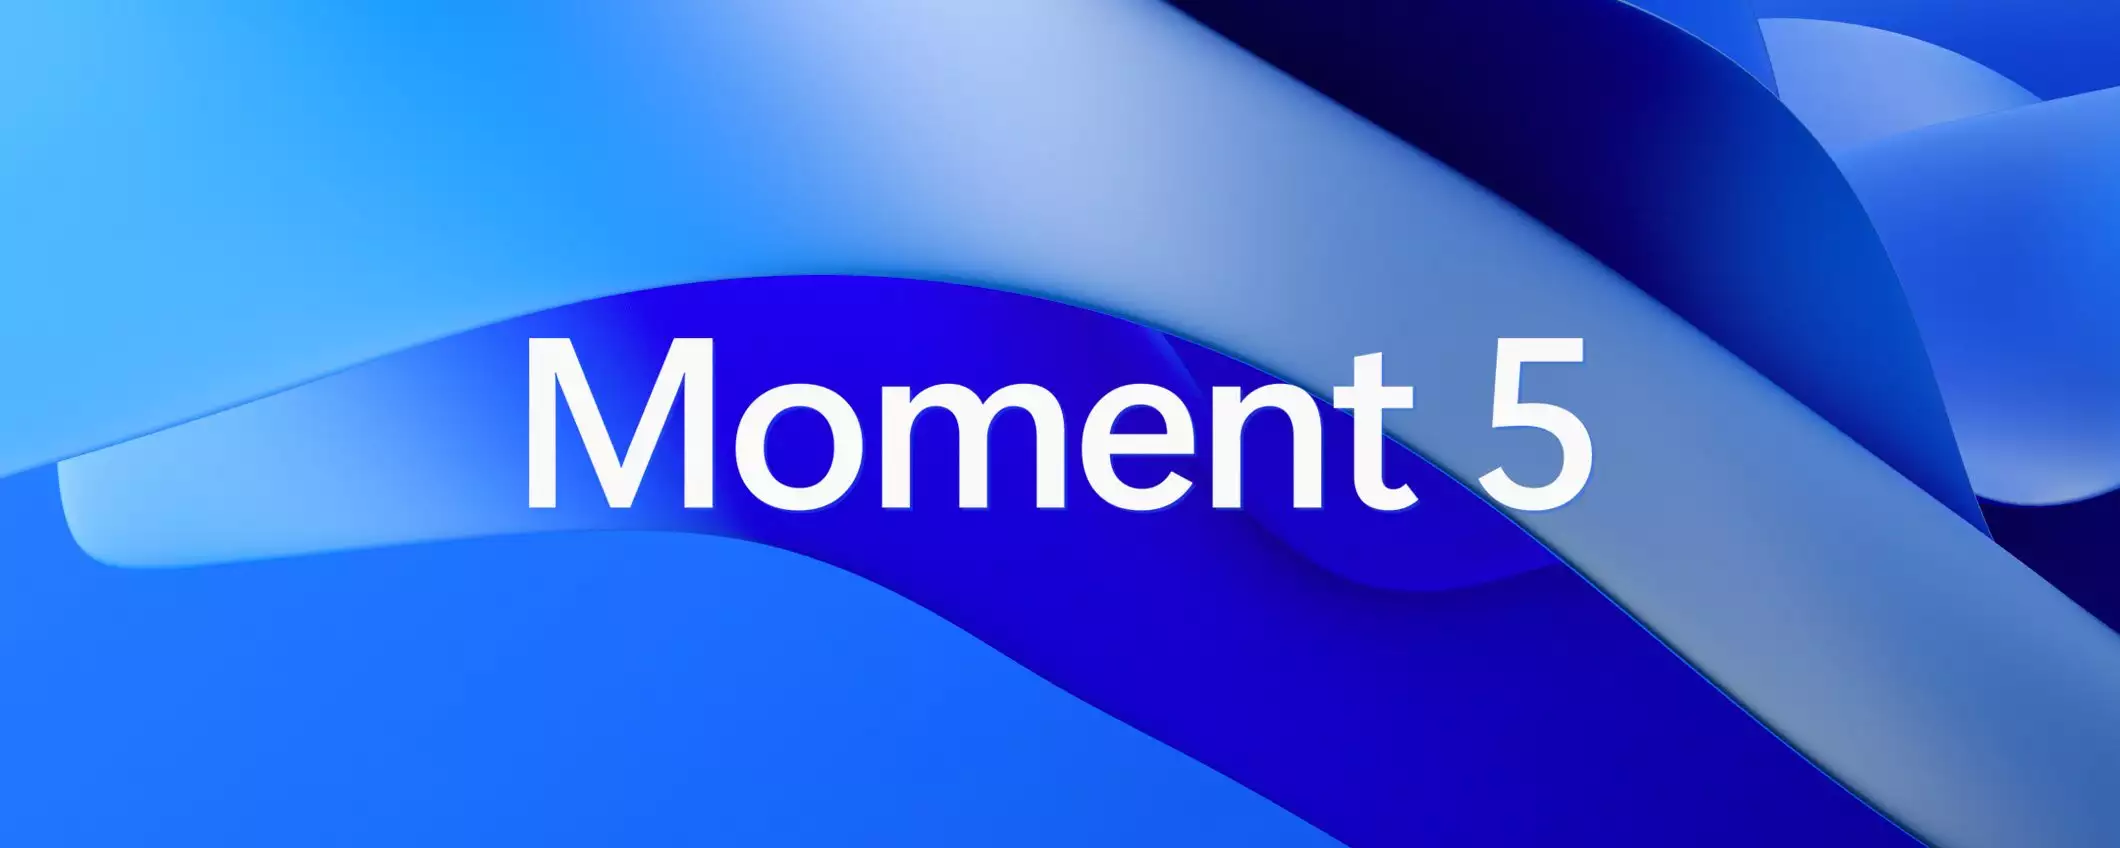 Windows 11: Moment 5 è sempre più vicino